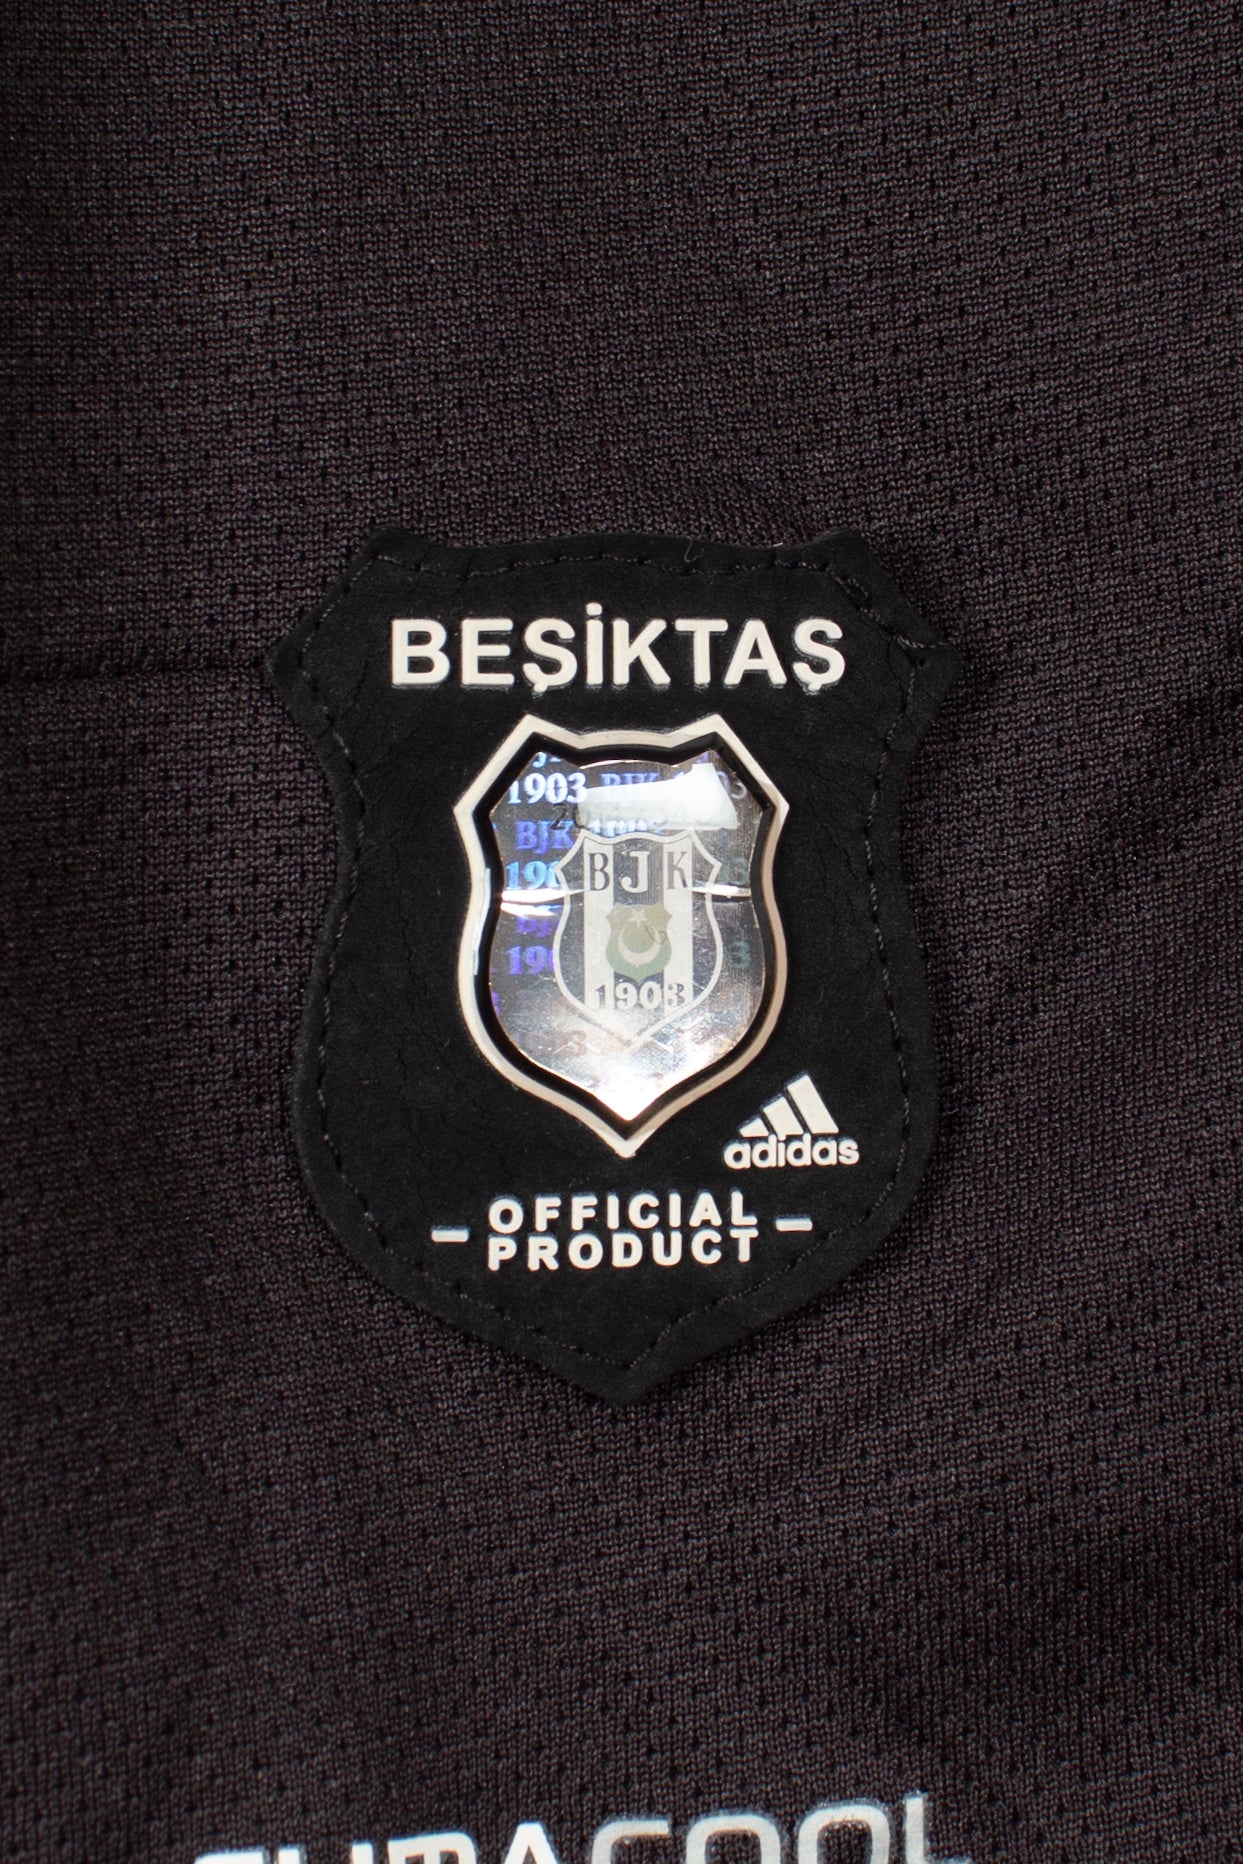 Besiktas 2013/14 Away Shirt (S)